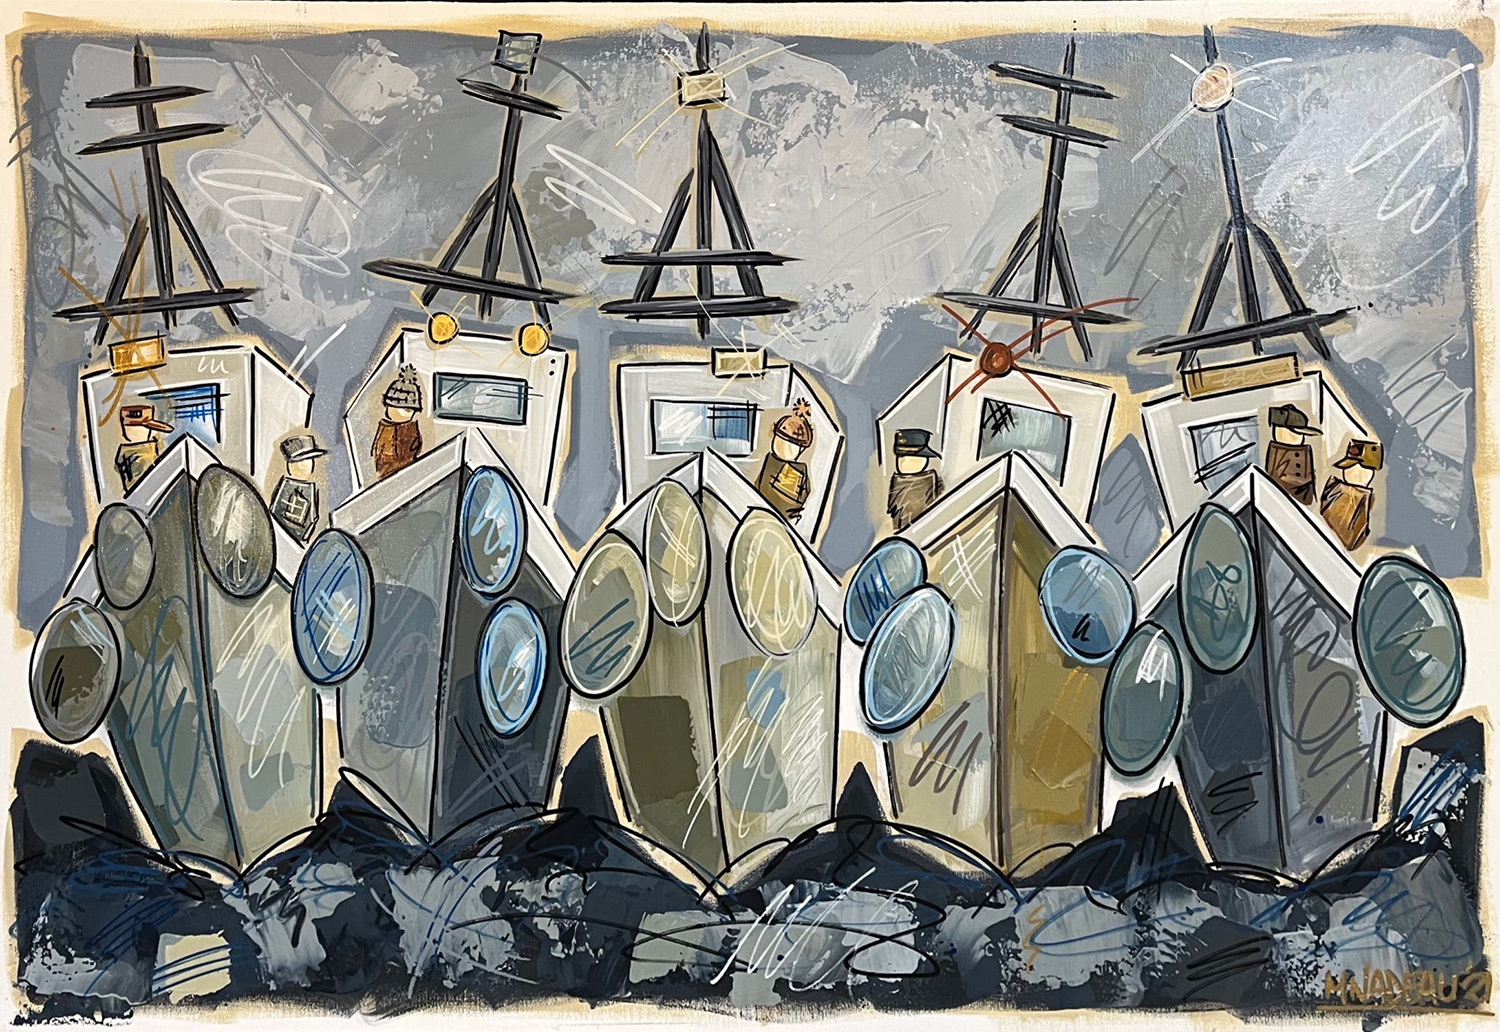 Tableau représentant des bateaux dans les tons de bleu, gris et beige